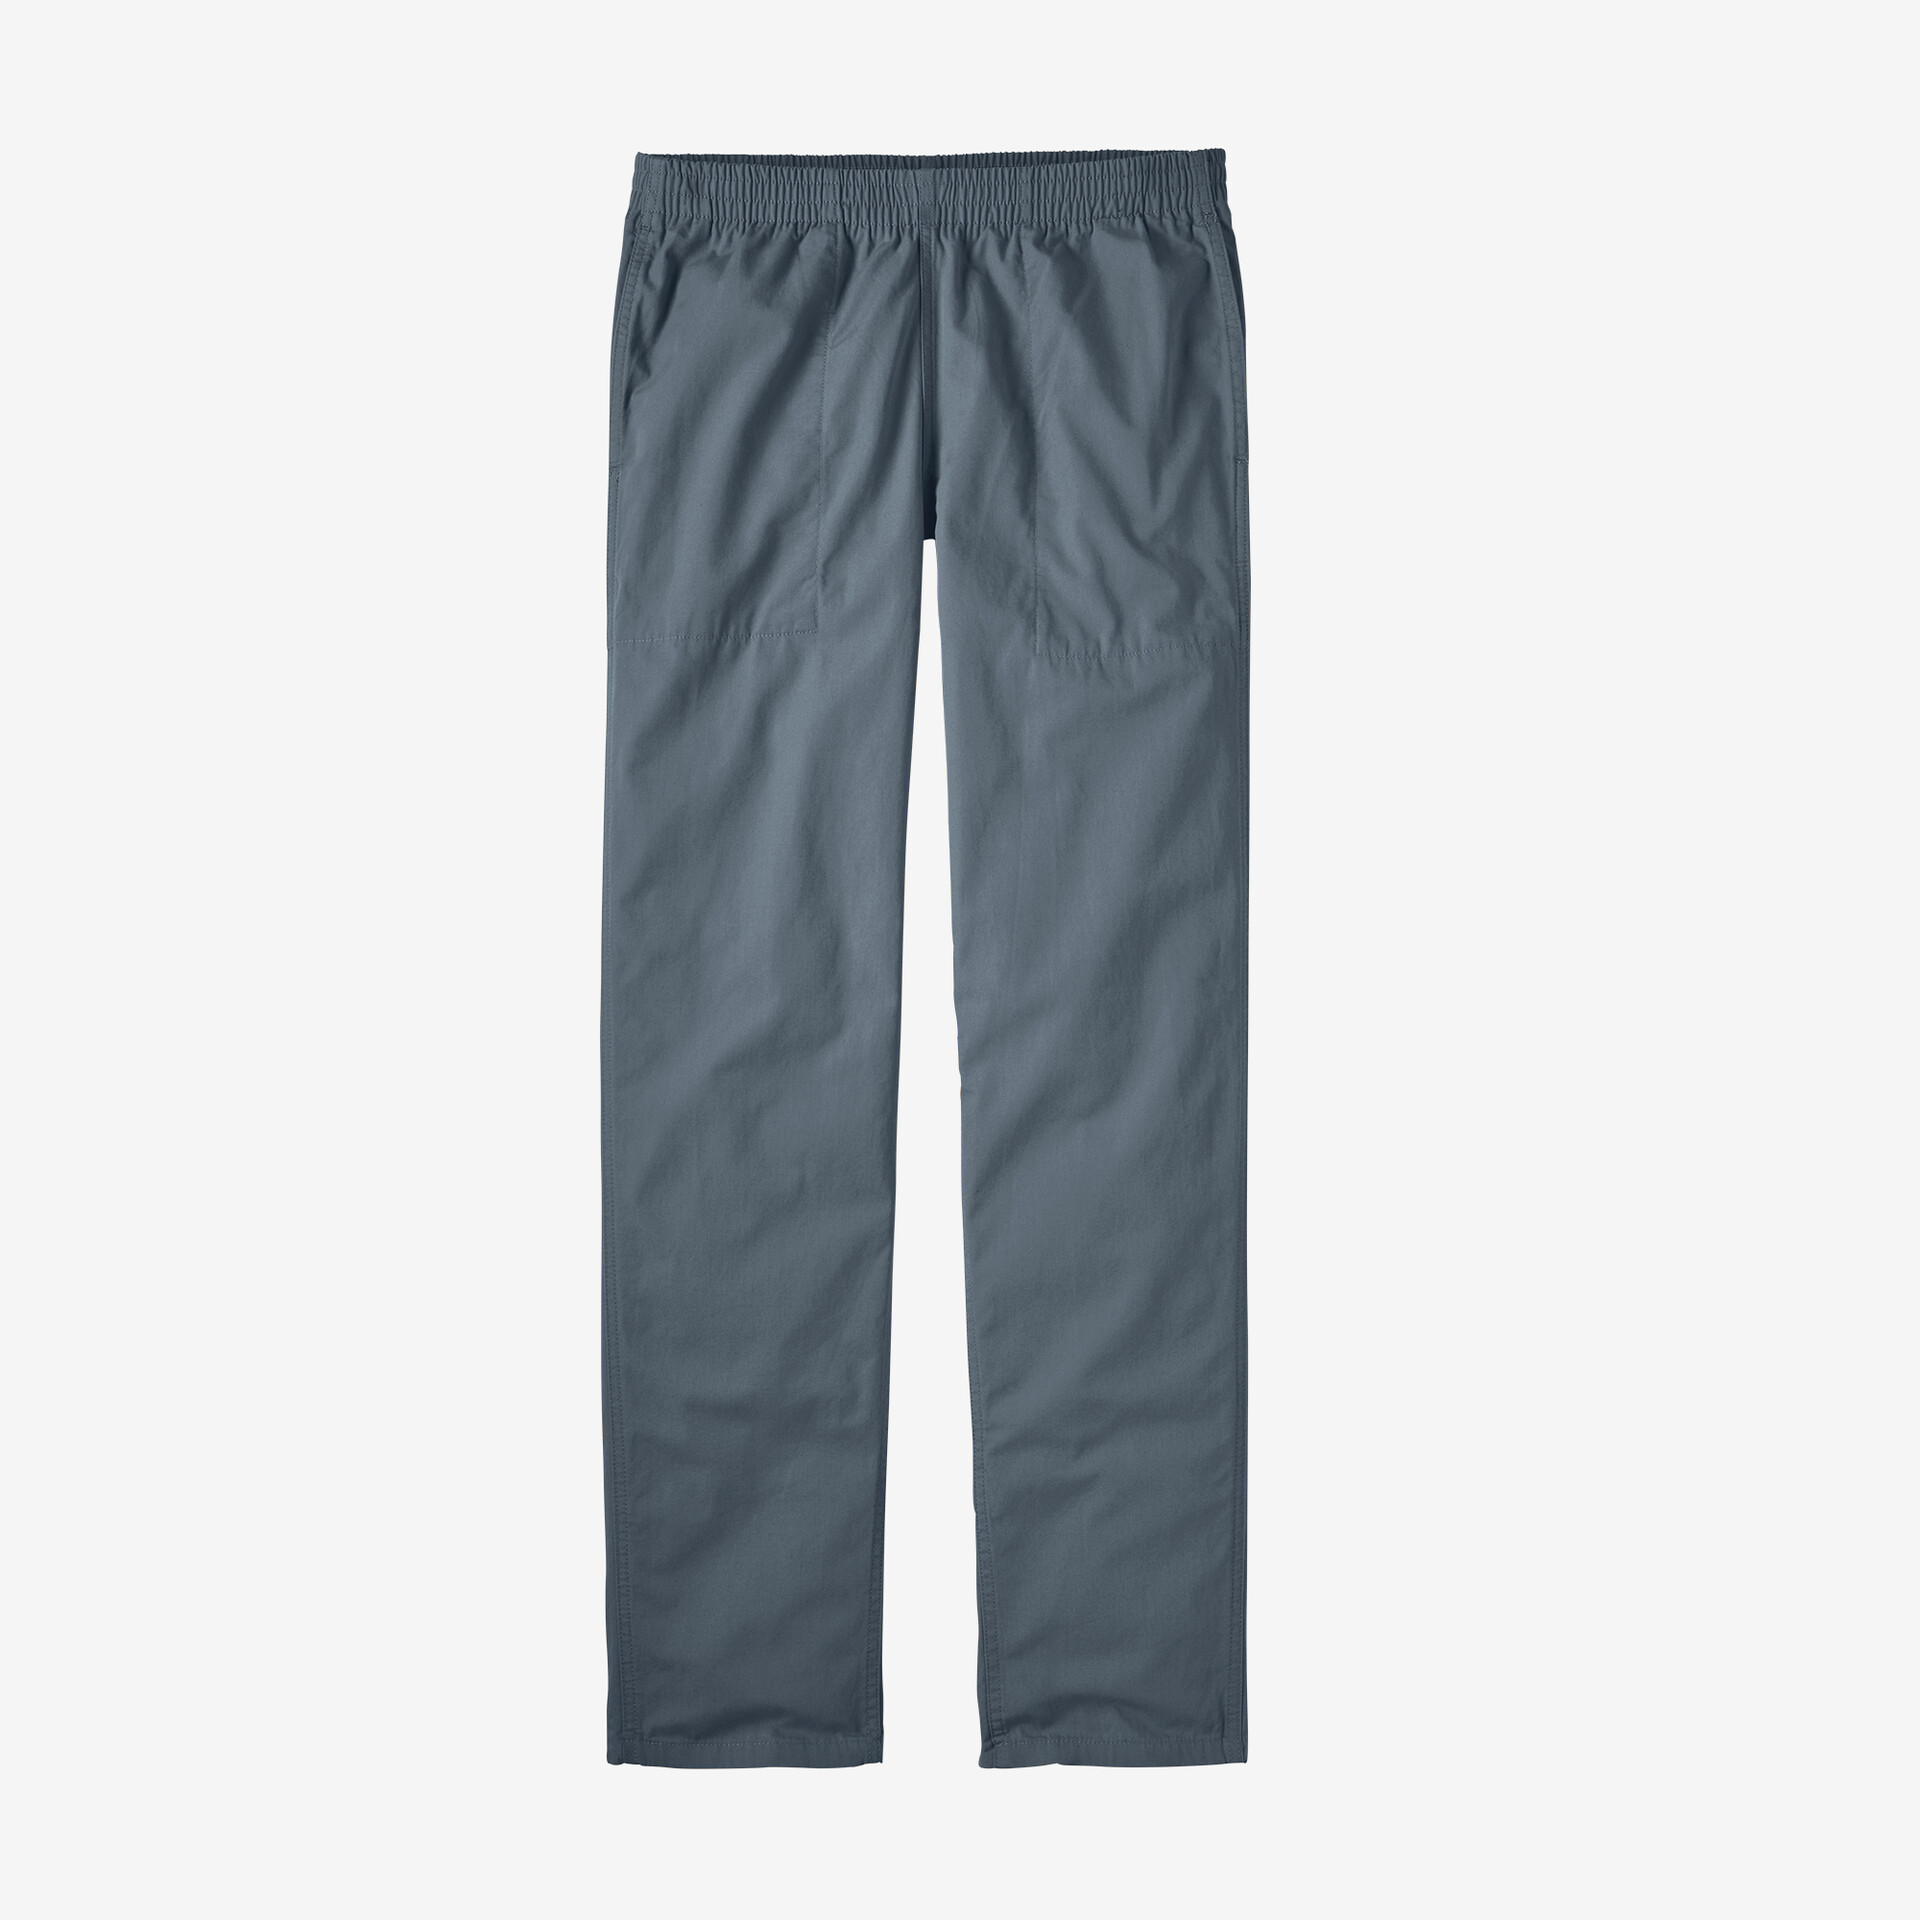 Мужские хлопковые брюки Funhoggers Patagonia, серый